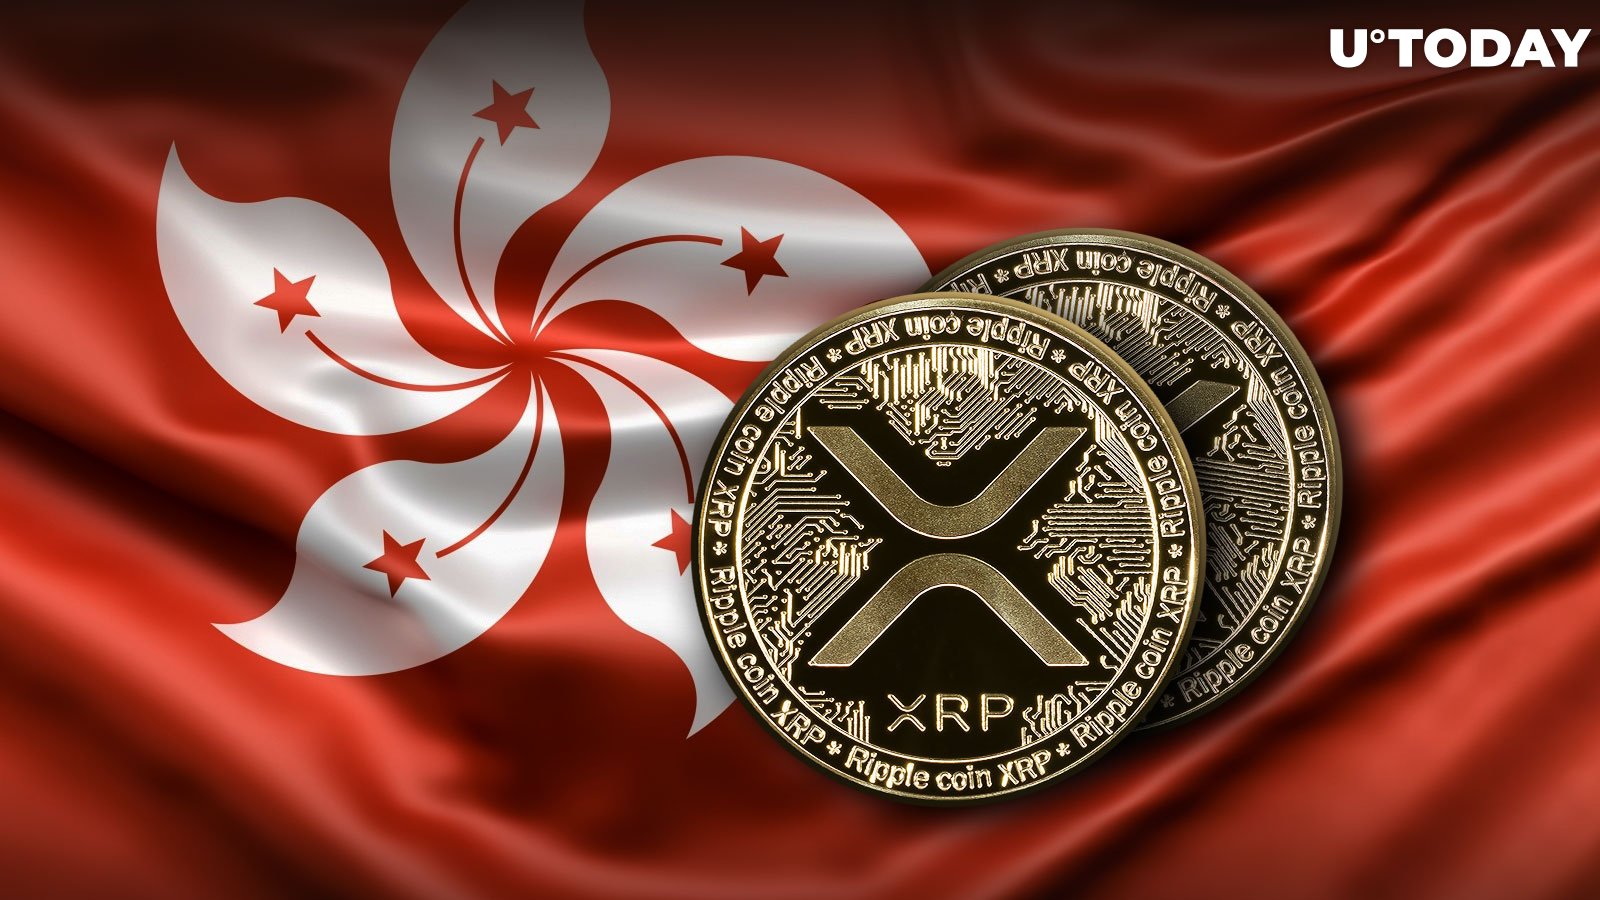 Hong Kong Makes Unexpected XRP Move